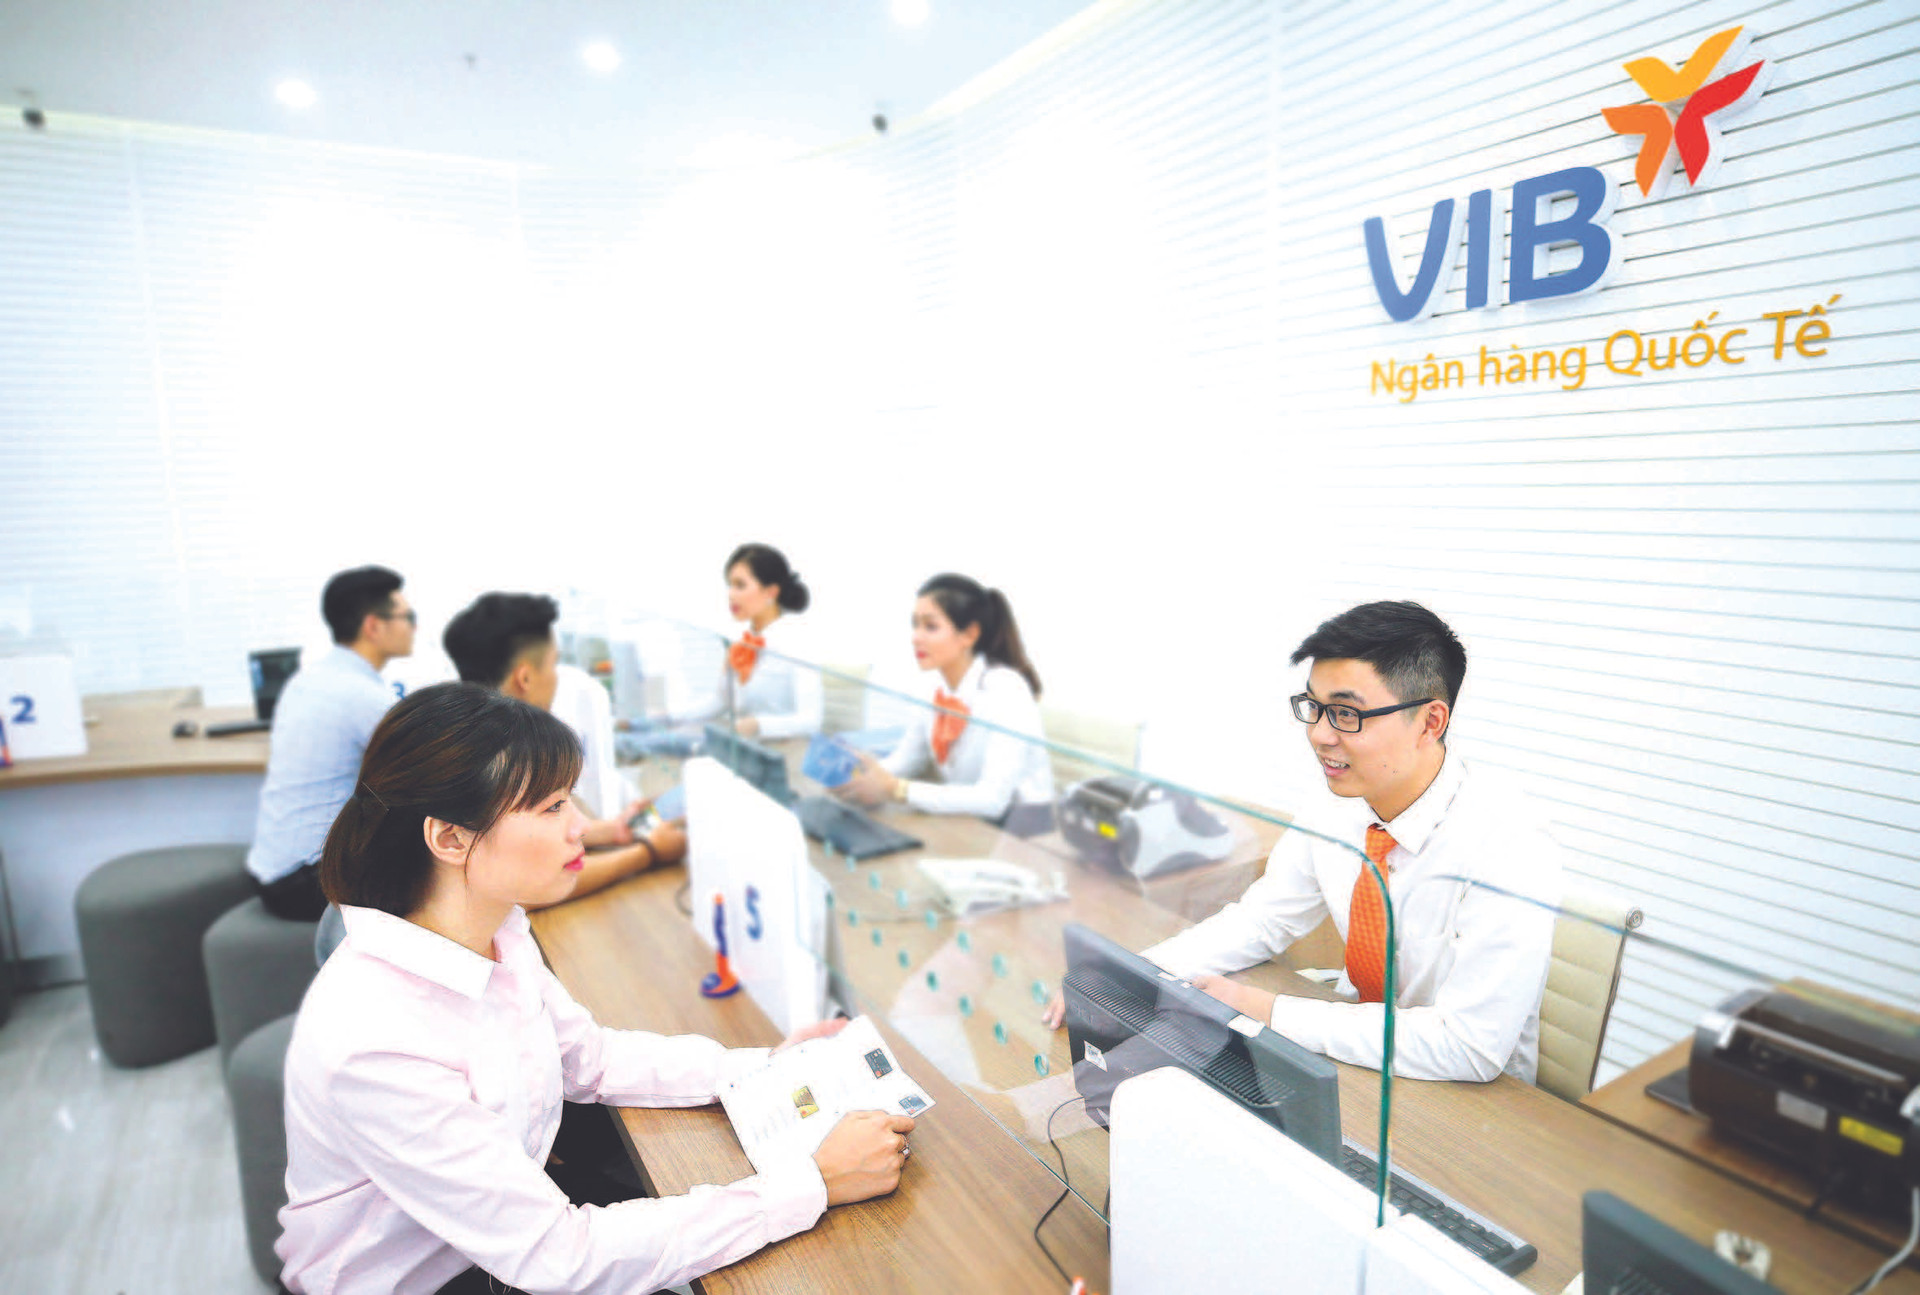 VIB hiện thực hóa mục tiêu: Ngân hàng sáng tạo nhờ chuyển đổi số - Ảnh 1.